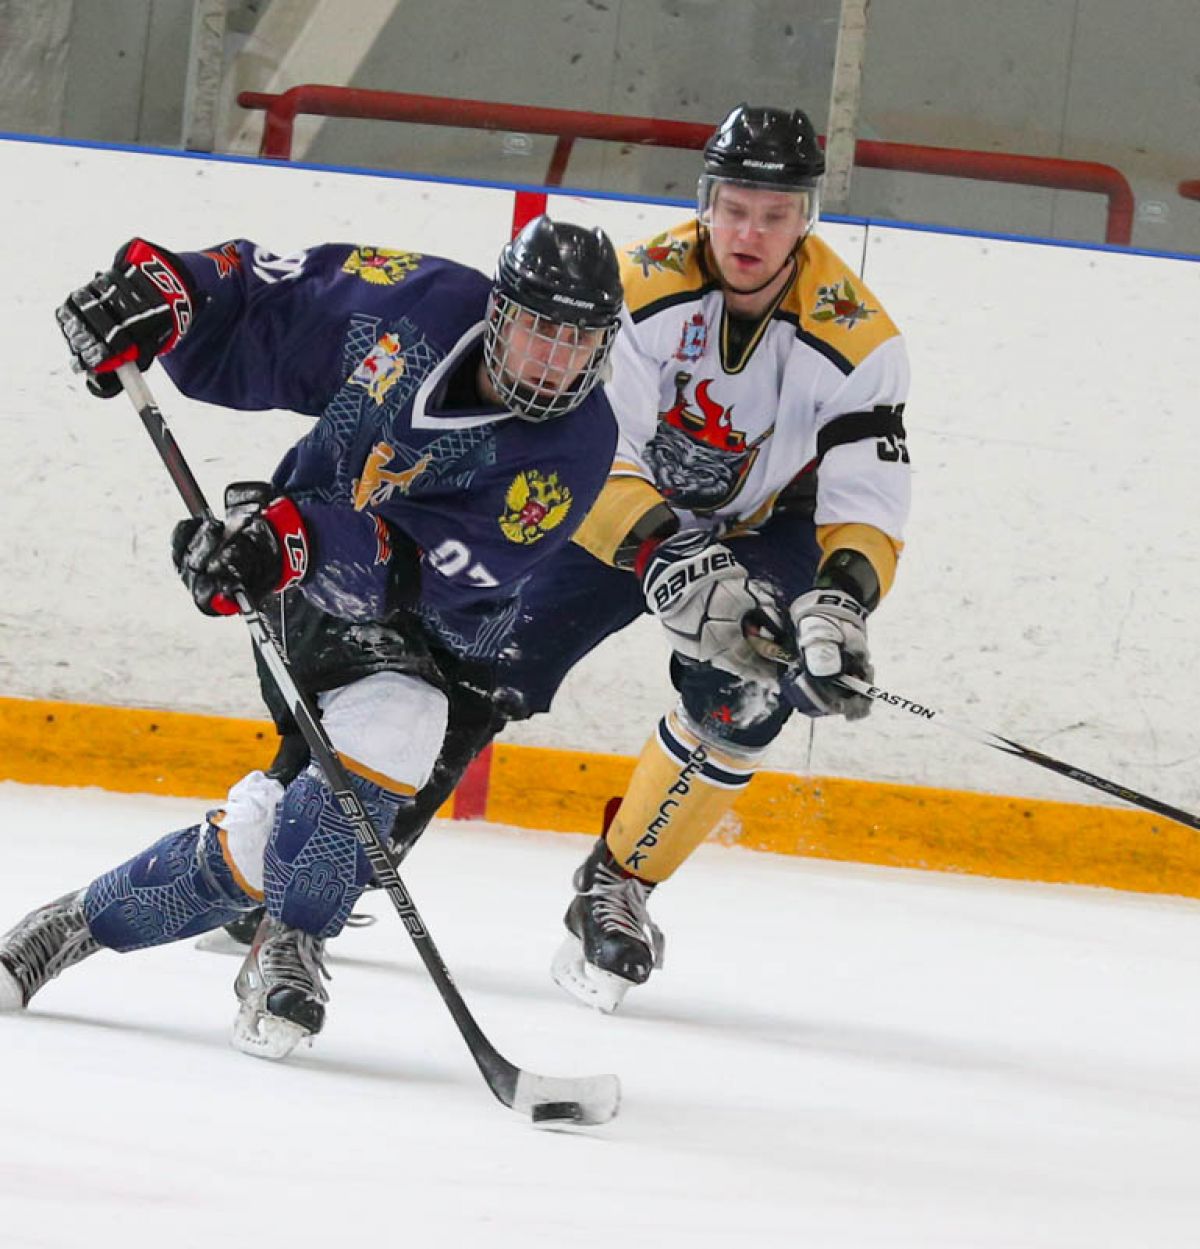 Итоги двадцать второй недели 5-го сезона регулярного Чемпионата ОХЛ в Нижнем Новгороде!